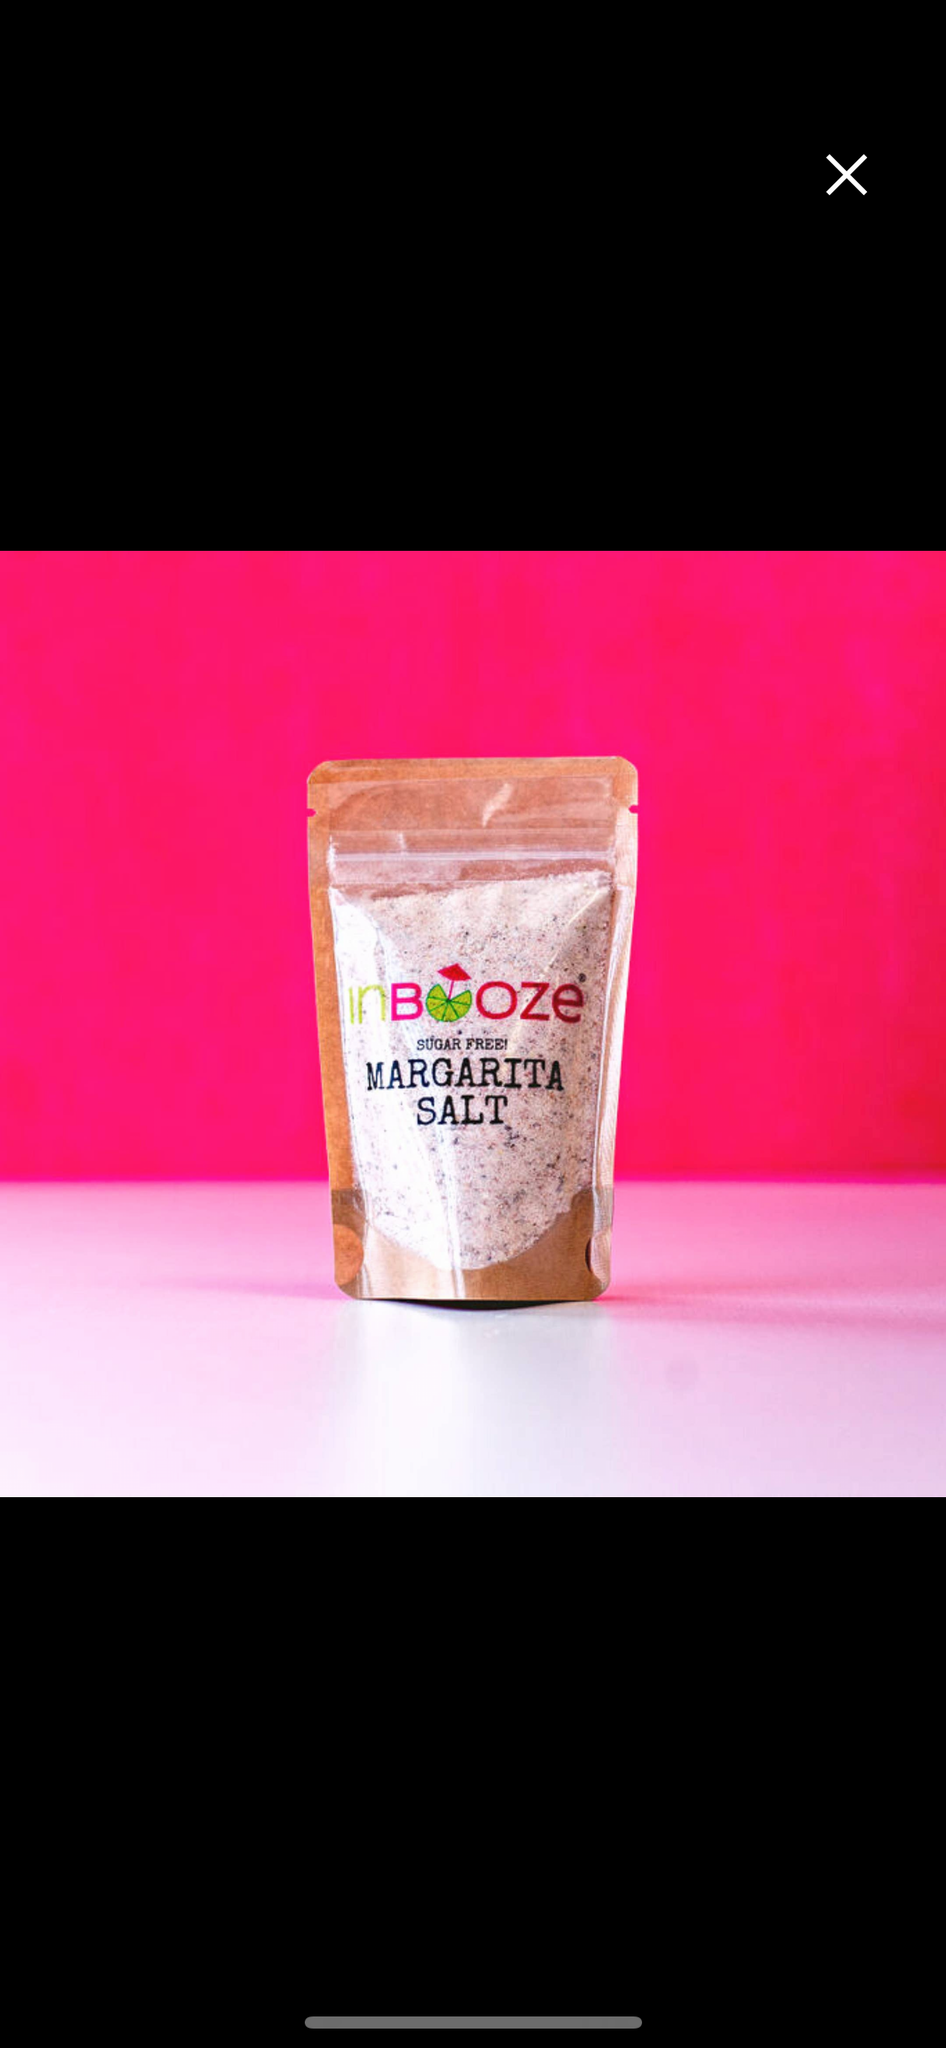 InBooze Margarita Salt